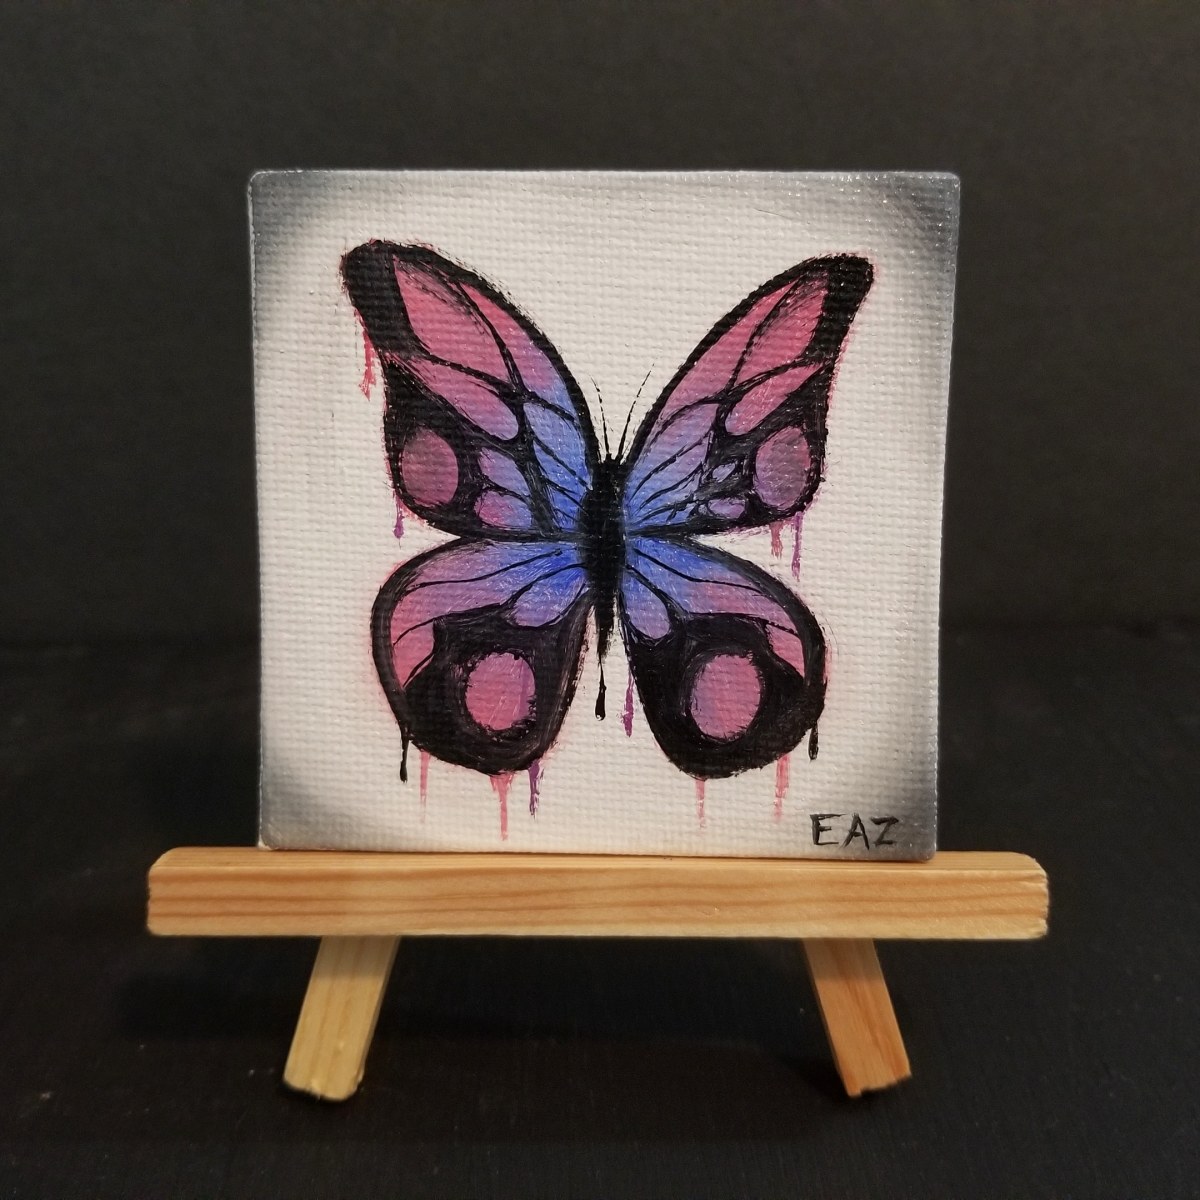 Butterfly by Elizabeth A. Zokaites 